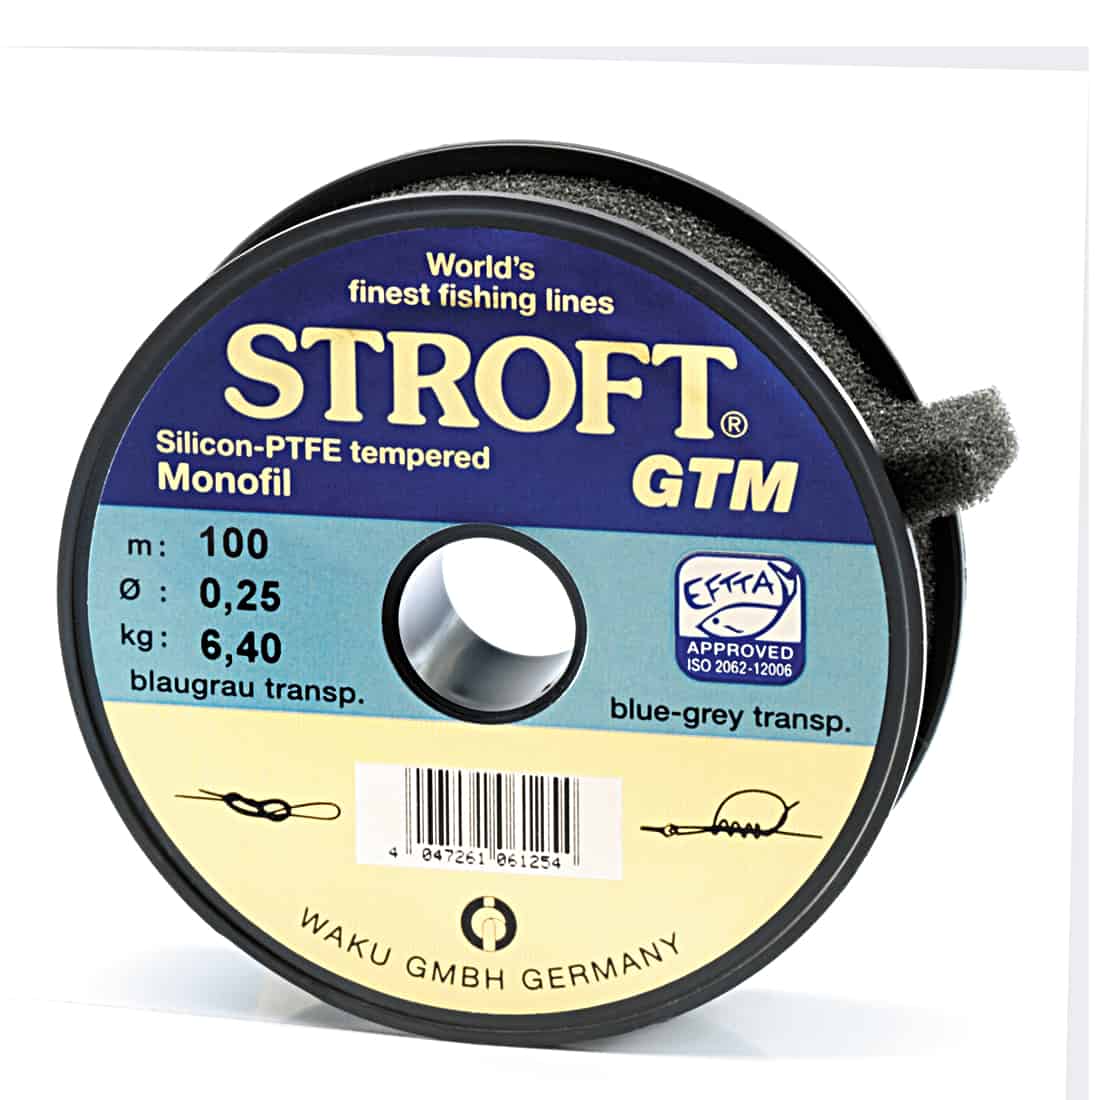 Stroft GTM 100m monofiilisiima-635